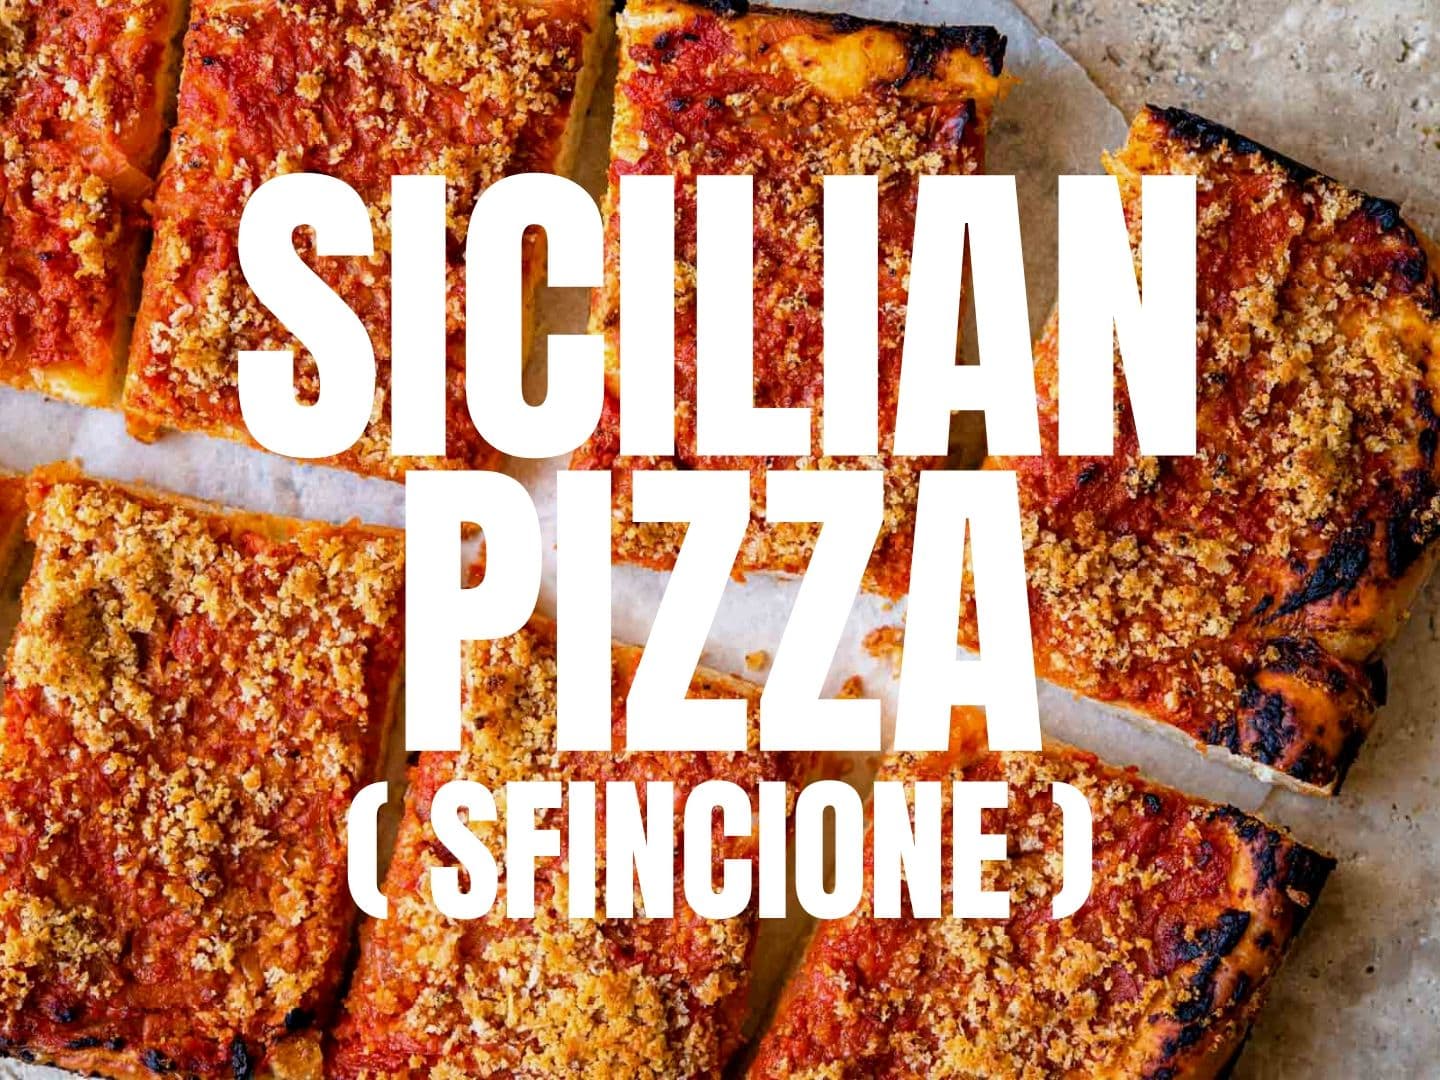 Sfincione Siciliano (Sicilian Style Pizza) - Mangia Bedda